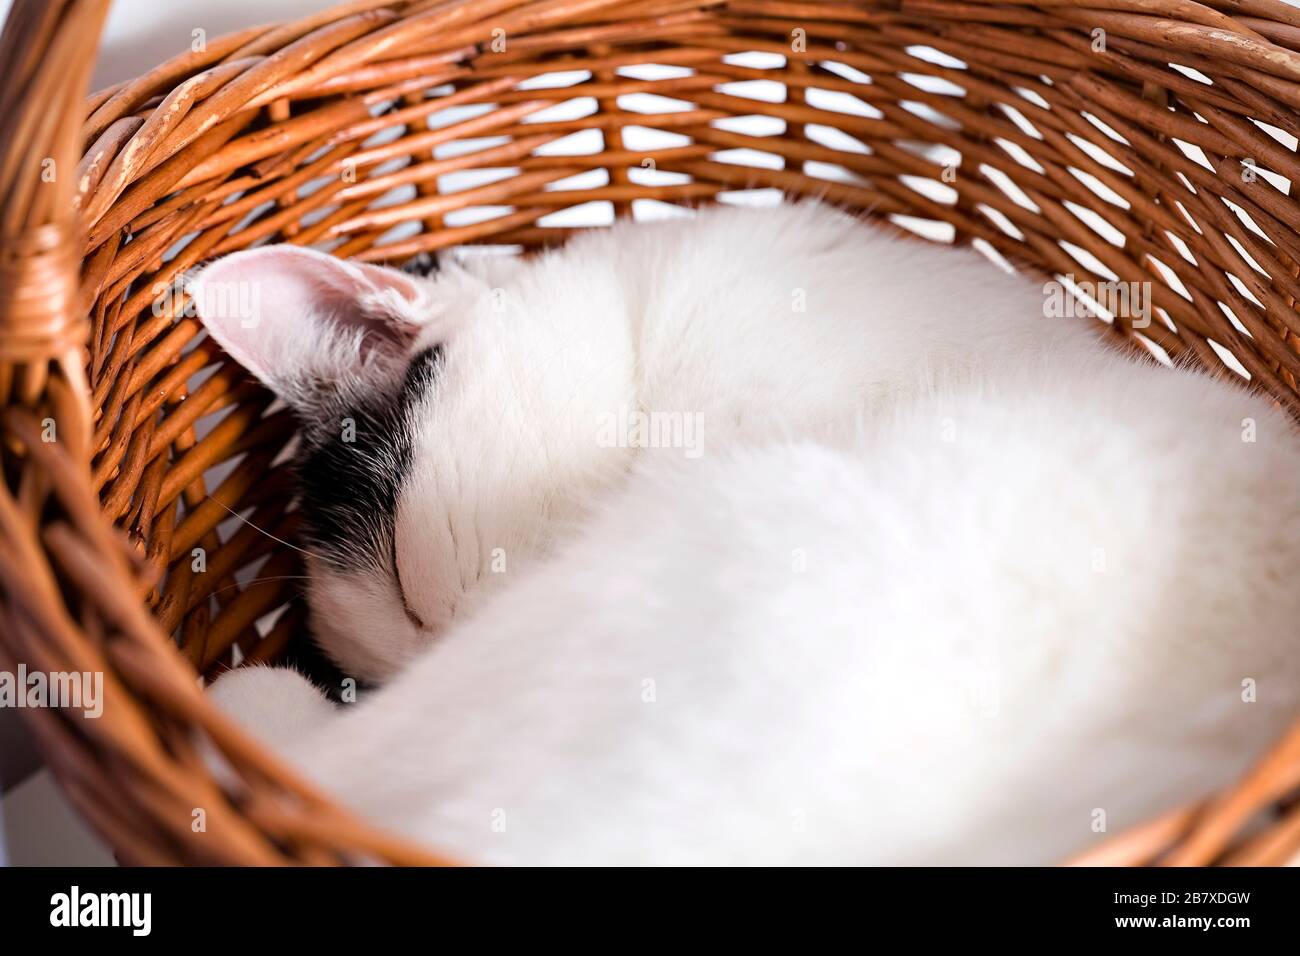 Un chat noir et blanc (Felis catus) s'endormit rapidement dans un baker en osier Banque D'Images